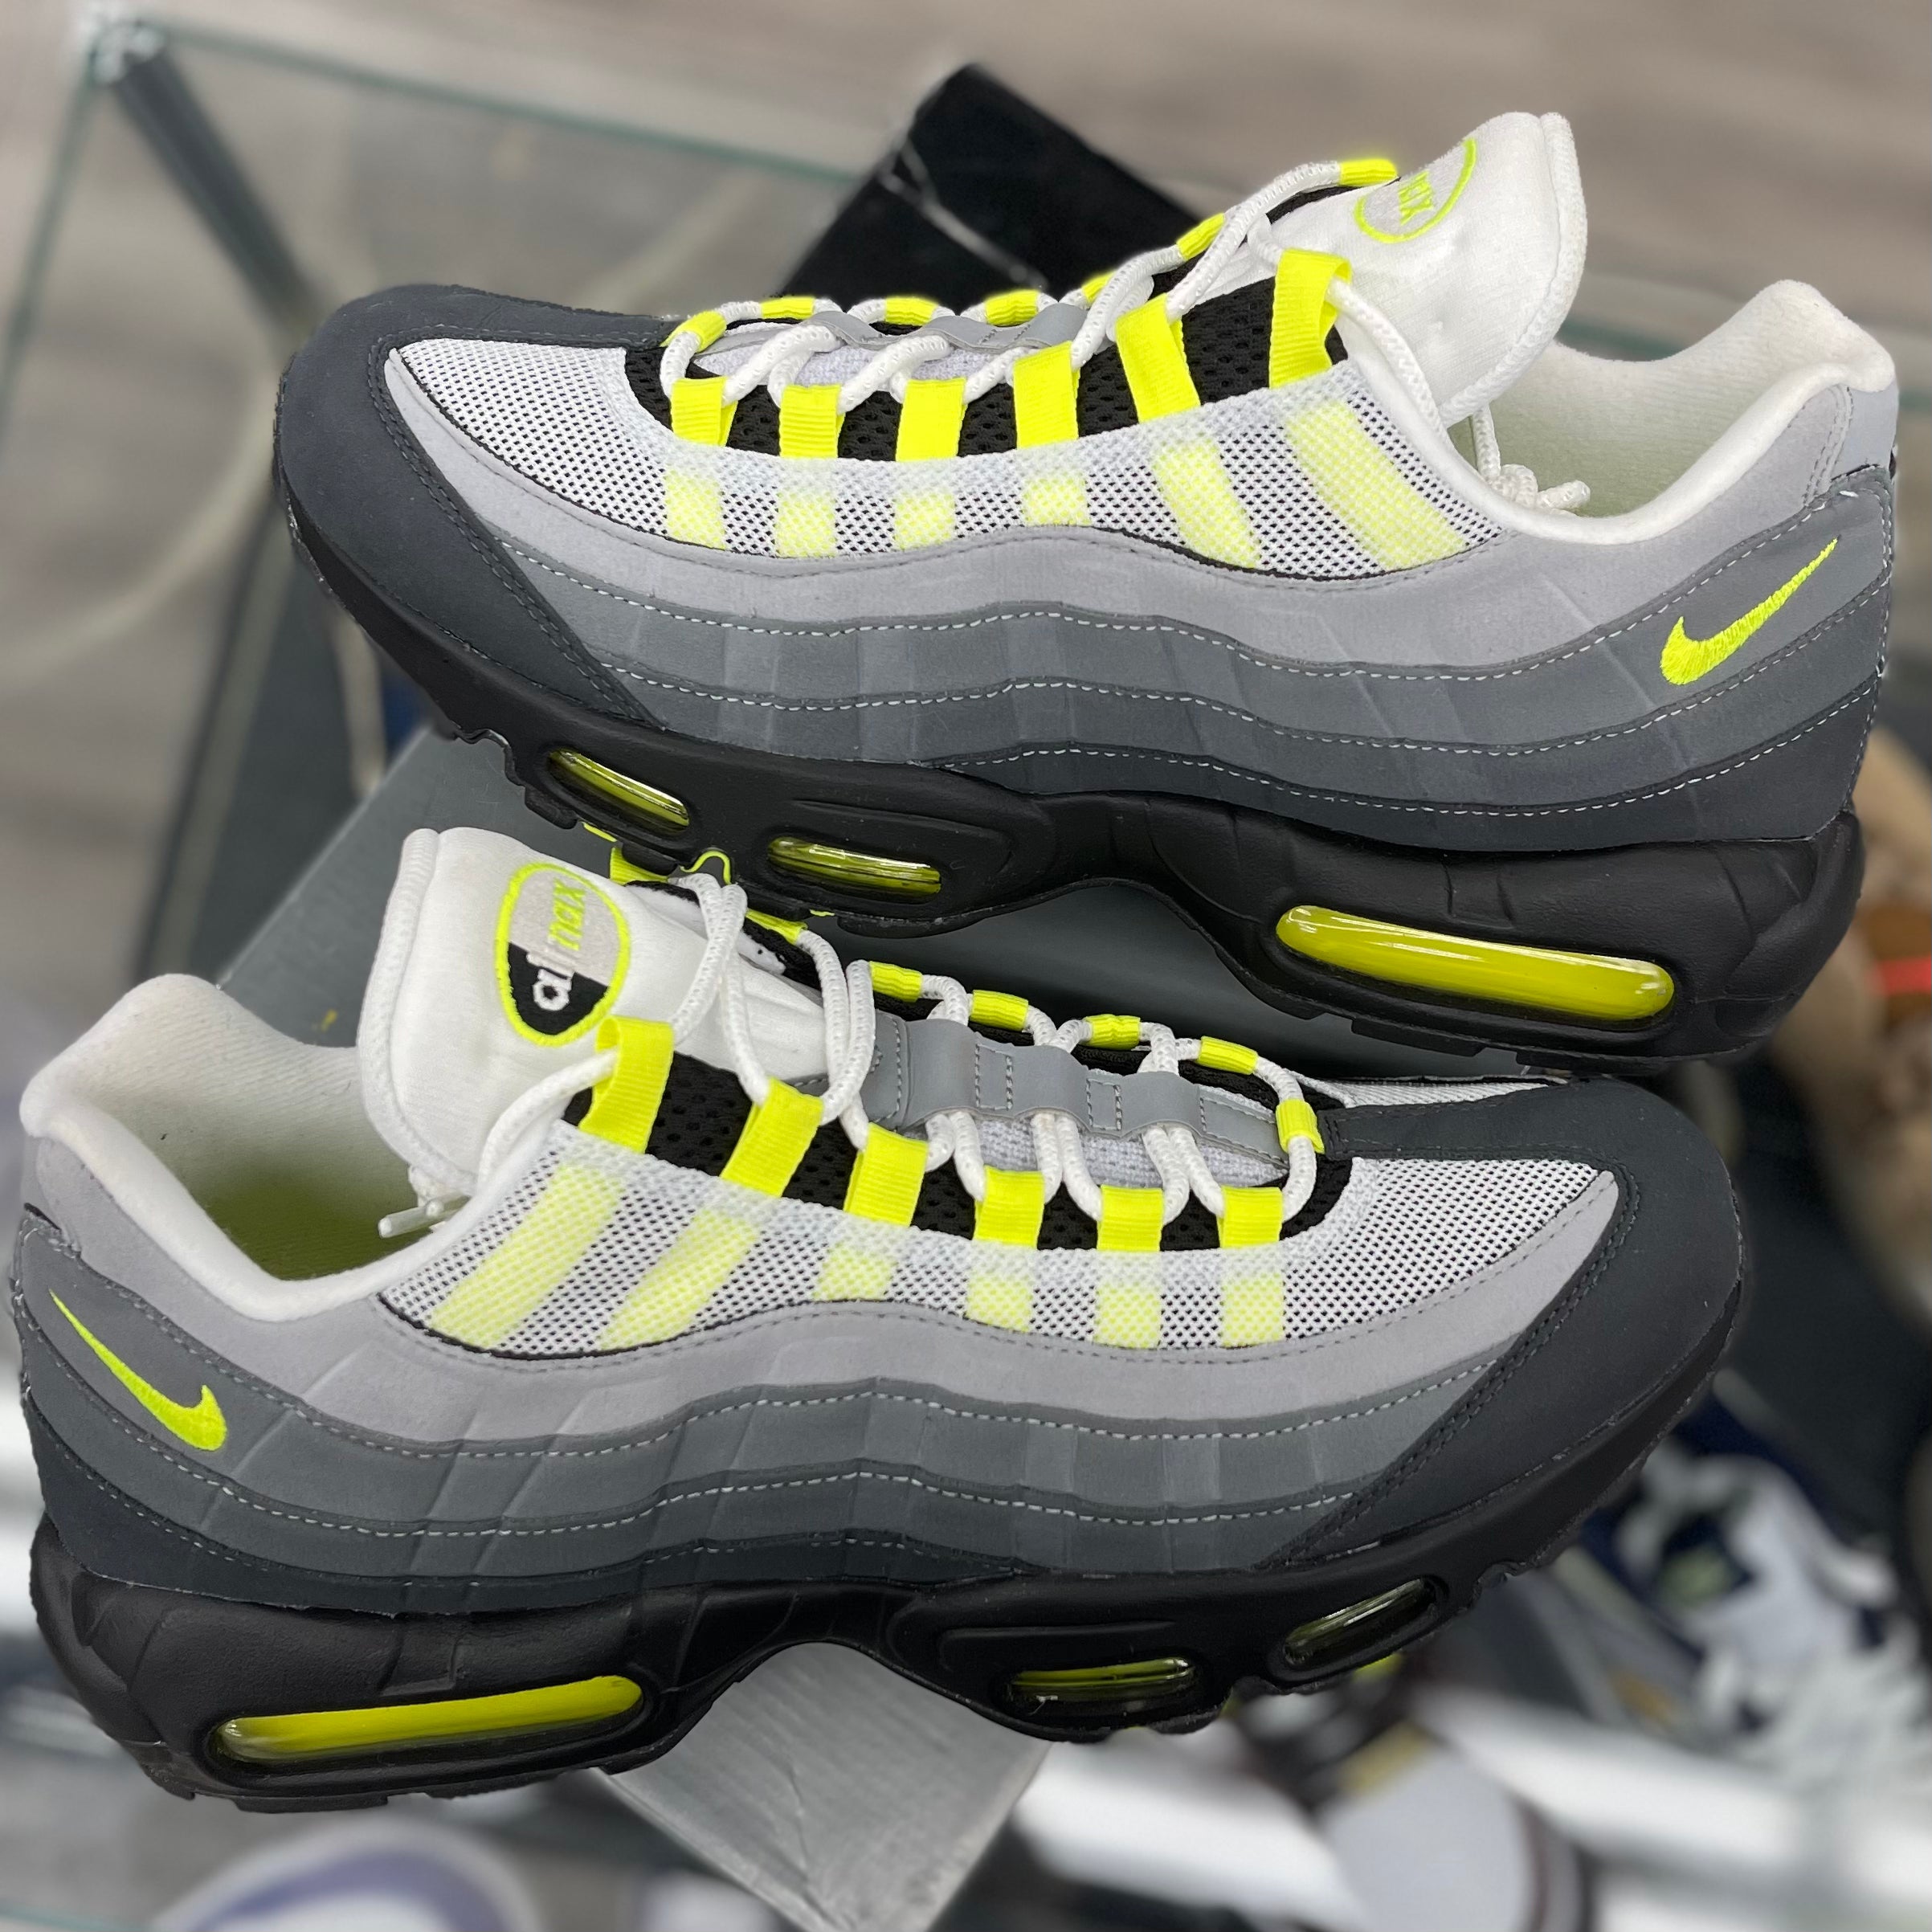 Nike Air Max 95 “OG Neon (2020)”